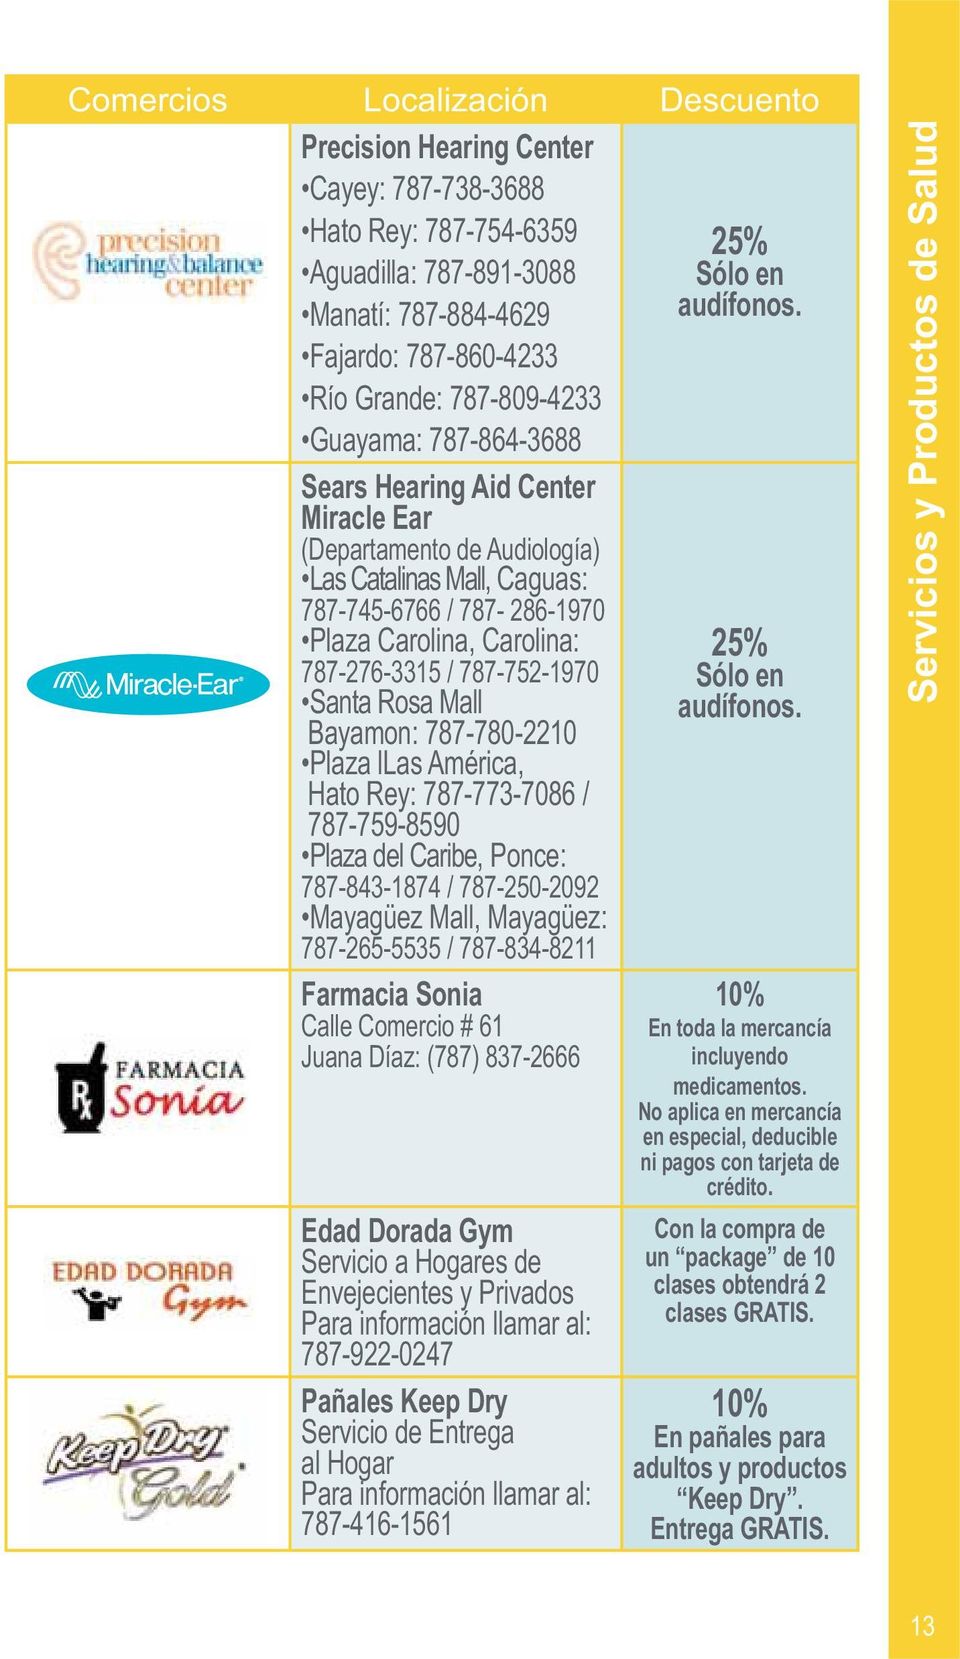 Gym Servicio a Hogares de 787-922-0247 Pañales Keep Dry Servicio de Entrega al Hogar 787-416-1561 25% Sólo en audífonos. 25% Sólo en audífonos. En toda la mercancía incluyendo medicamentos.